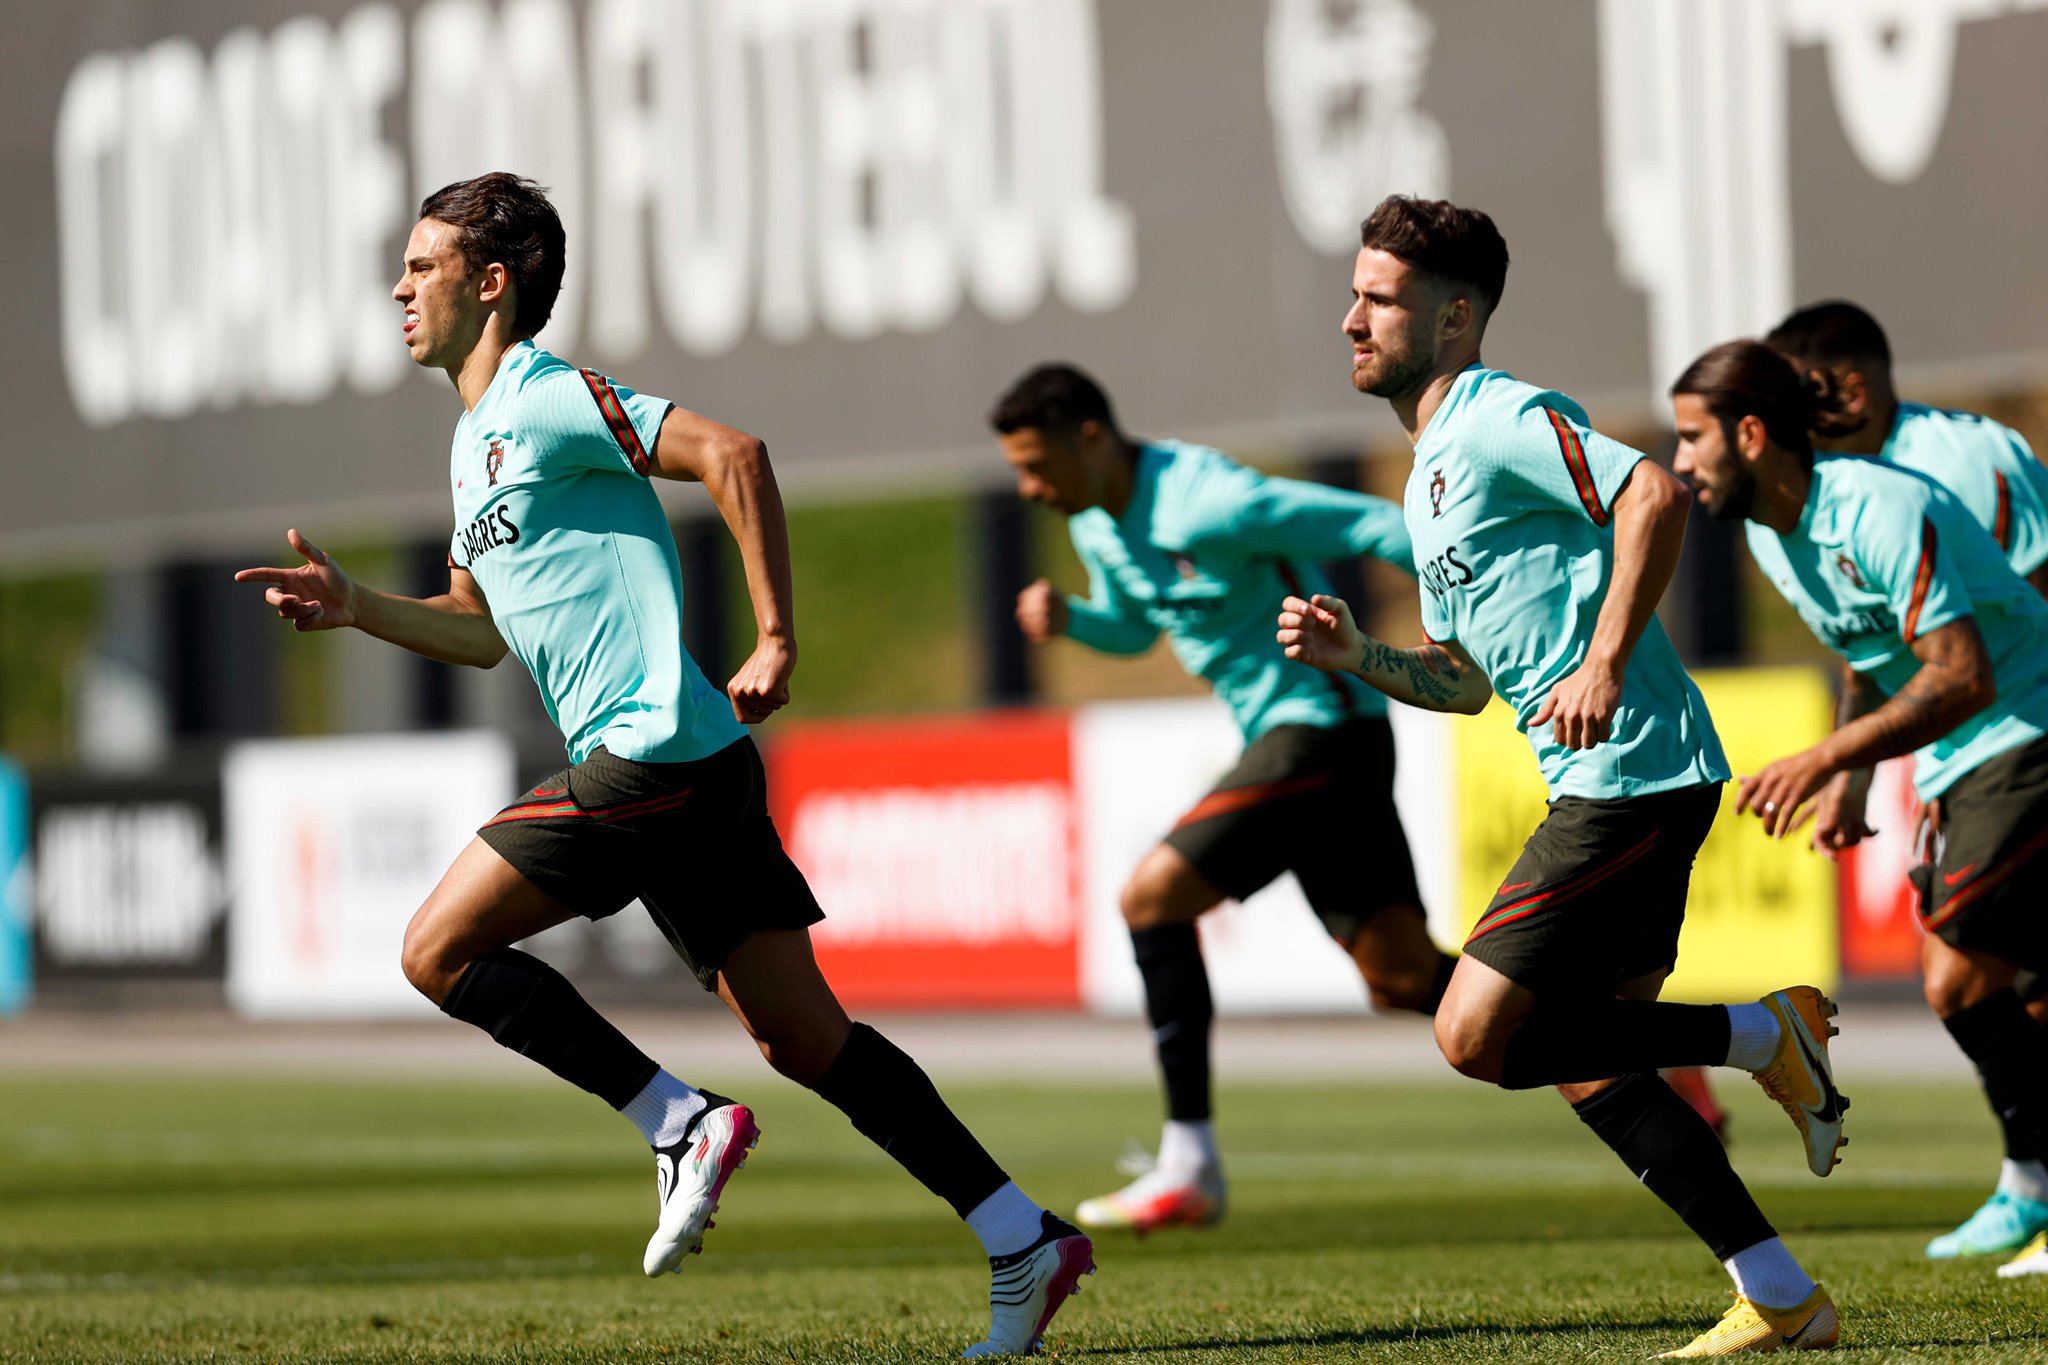 Ronaldo sung sức, Bồ Đào Nha sẵn sàng chinh phục EURO - Bóng Đá